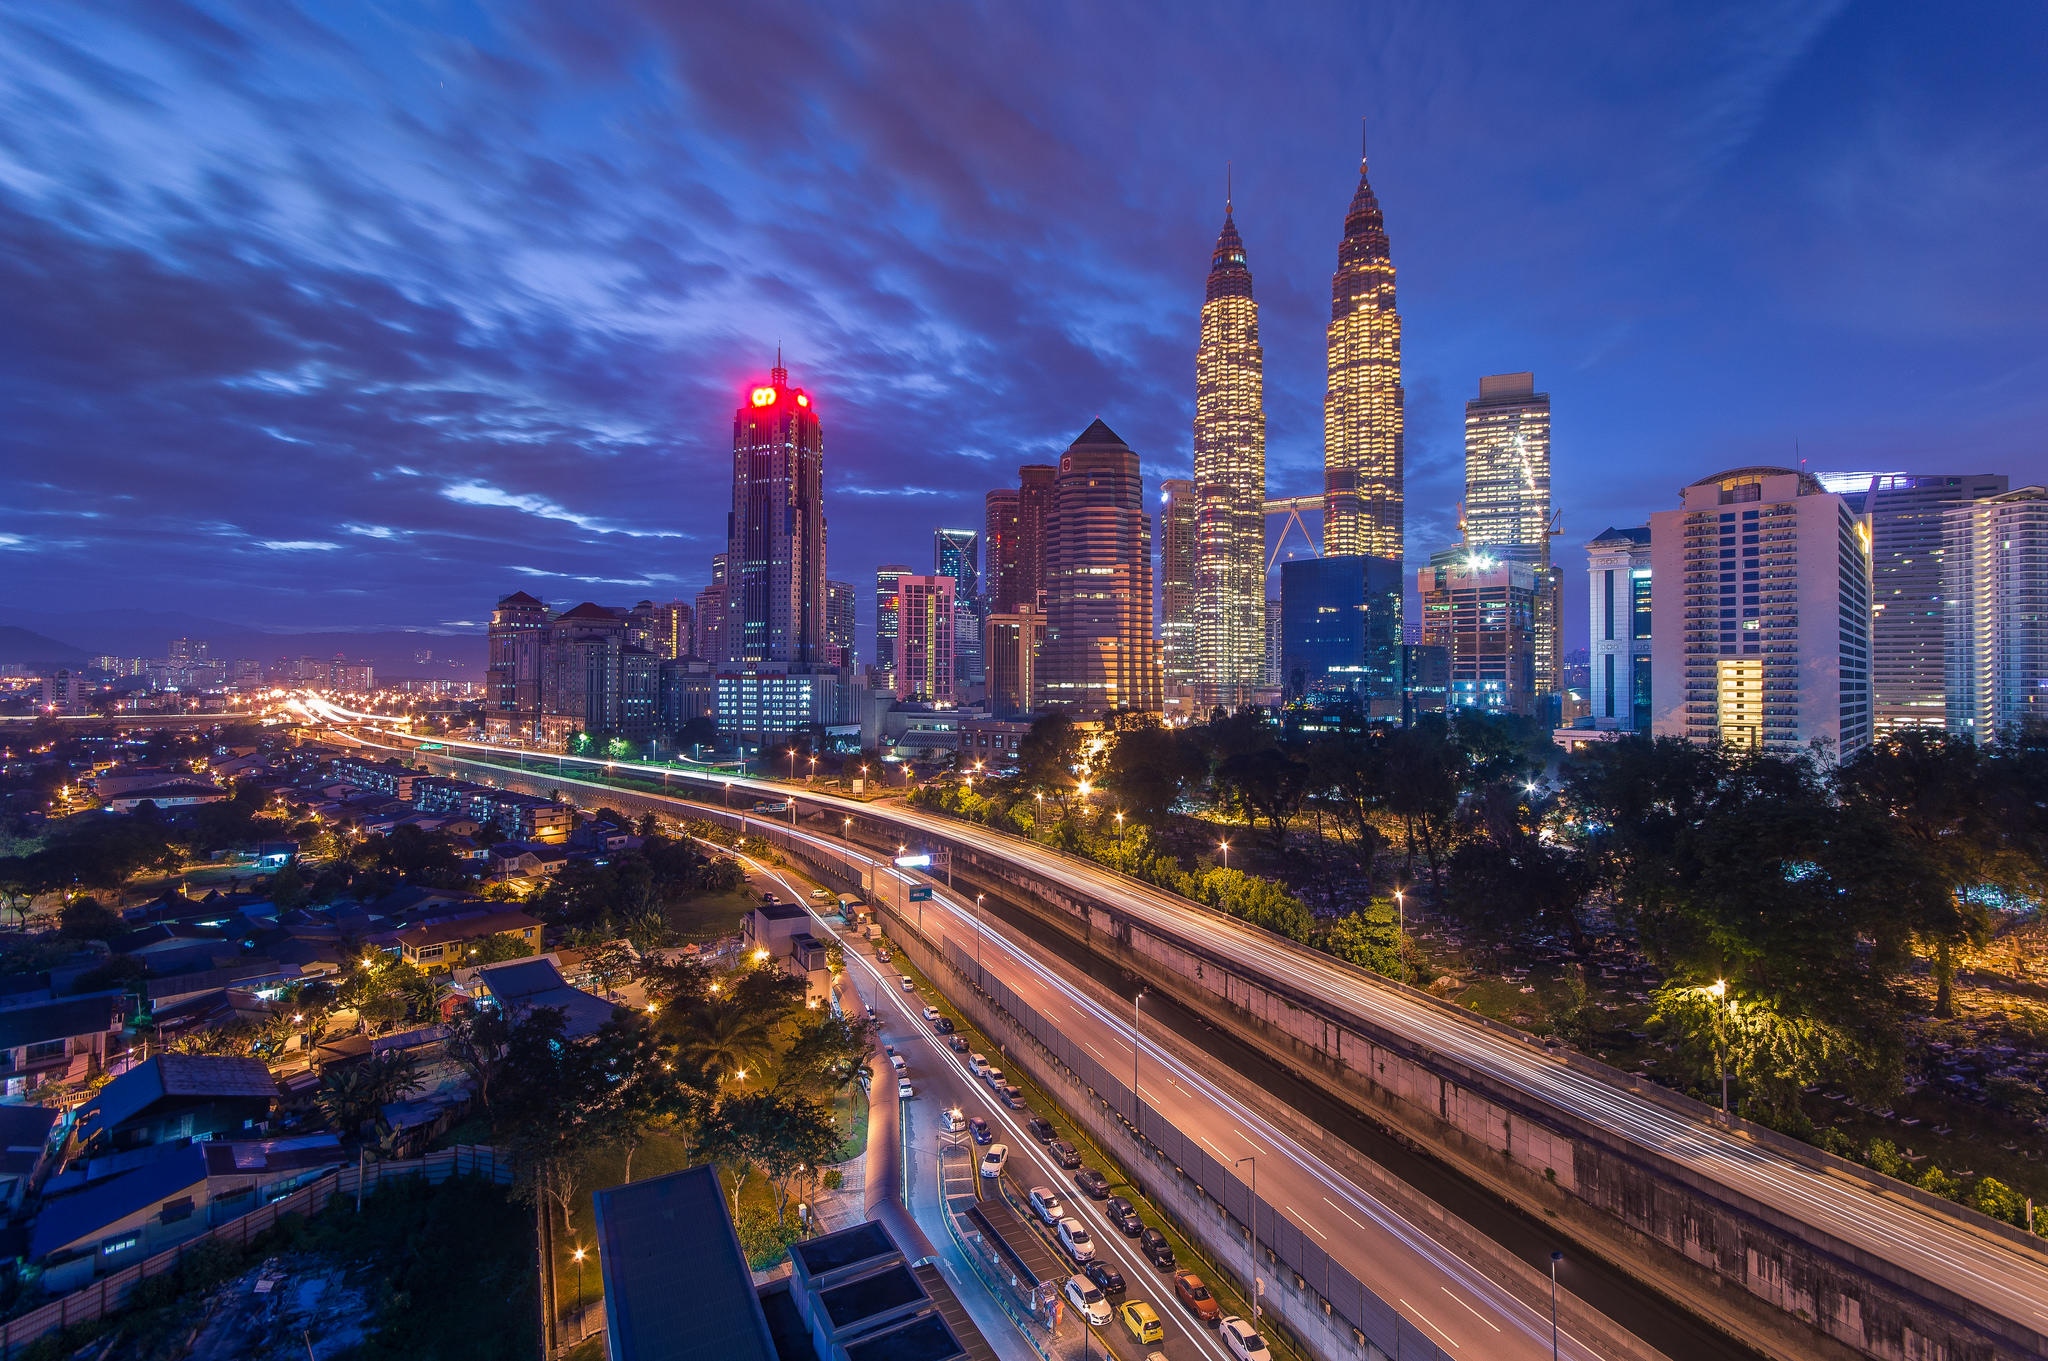 Wallpapers illumination city Kuala Lumpur on the desktop